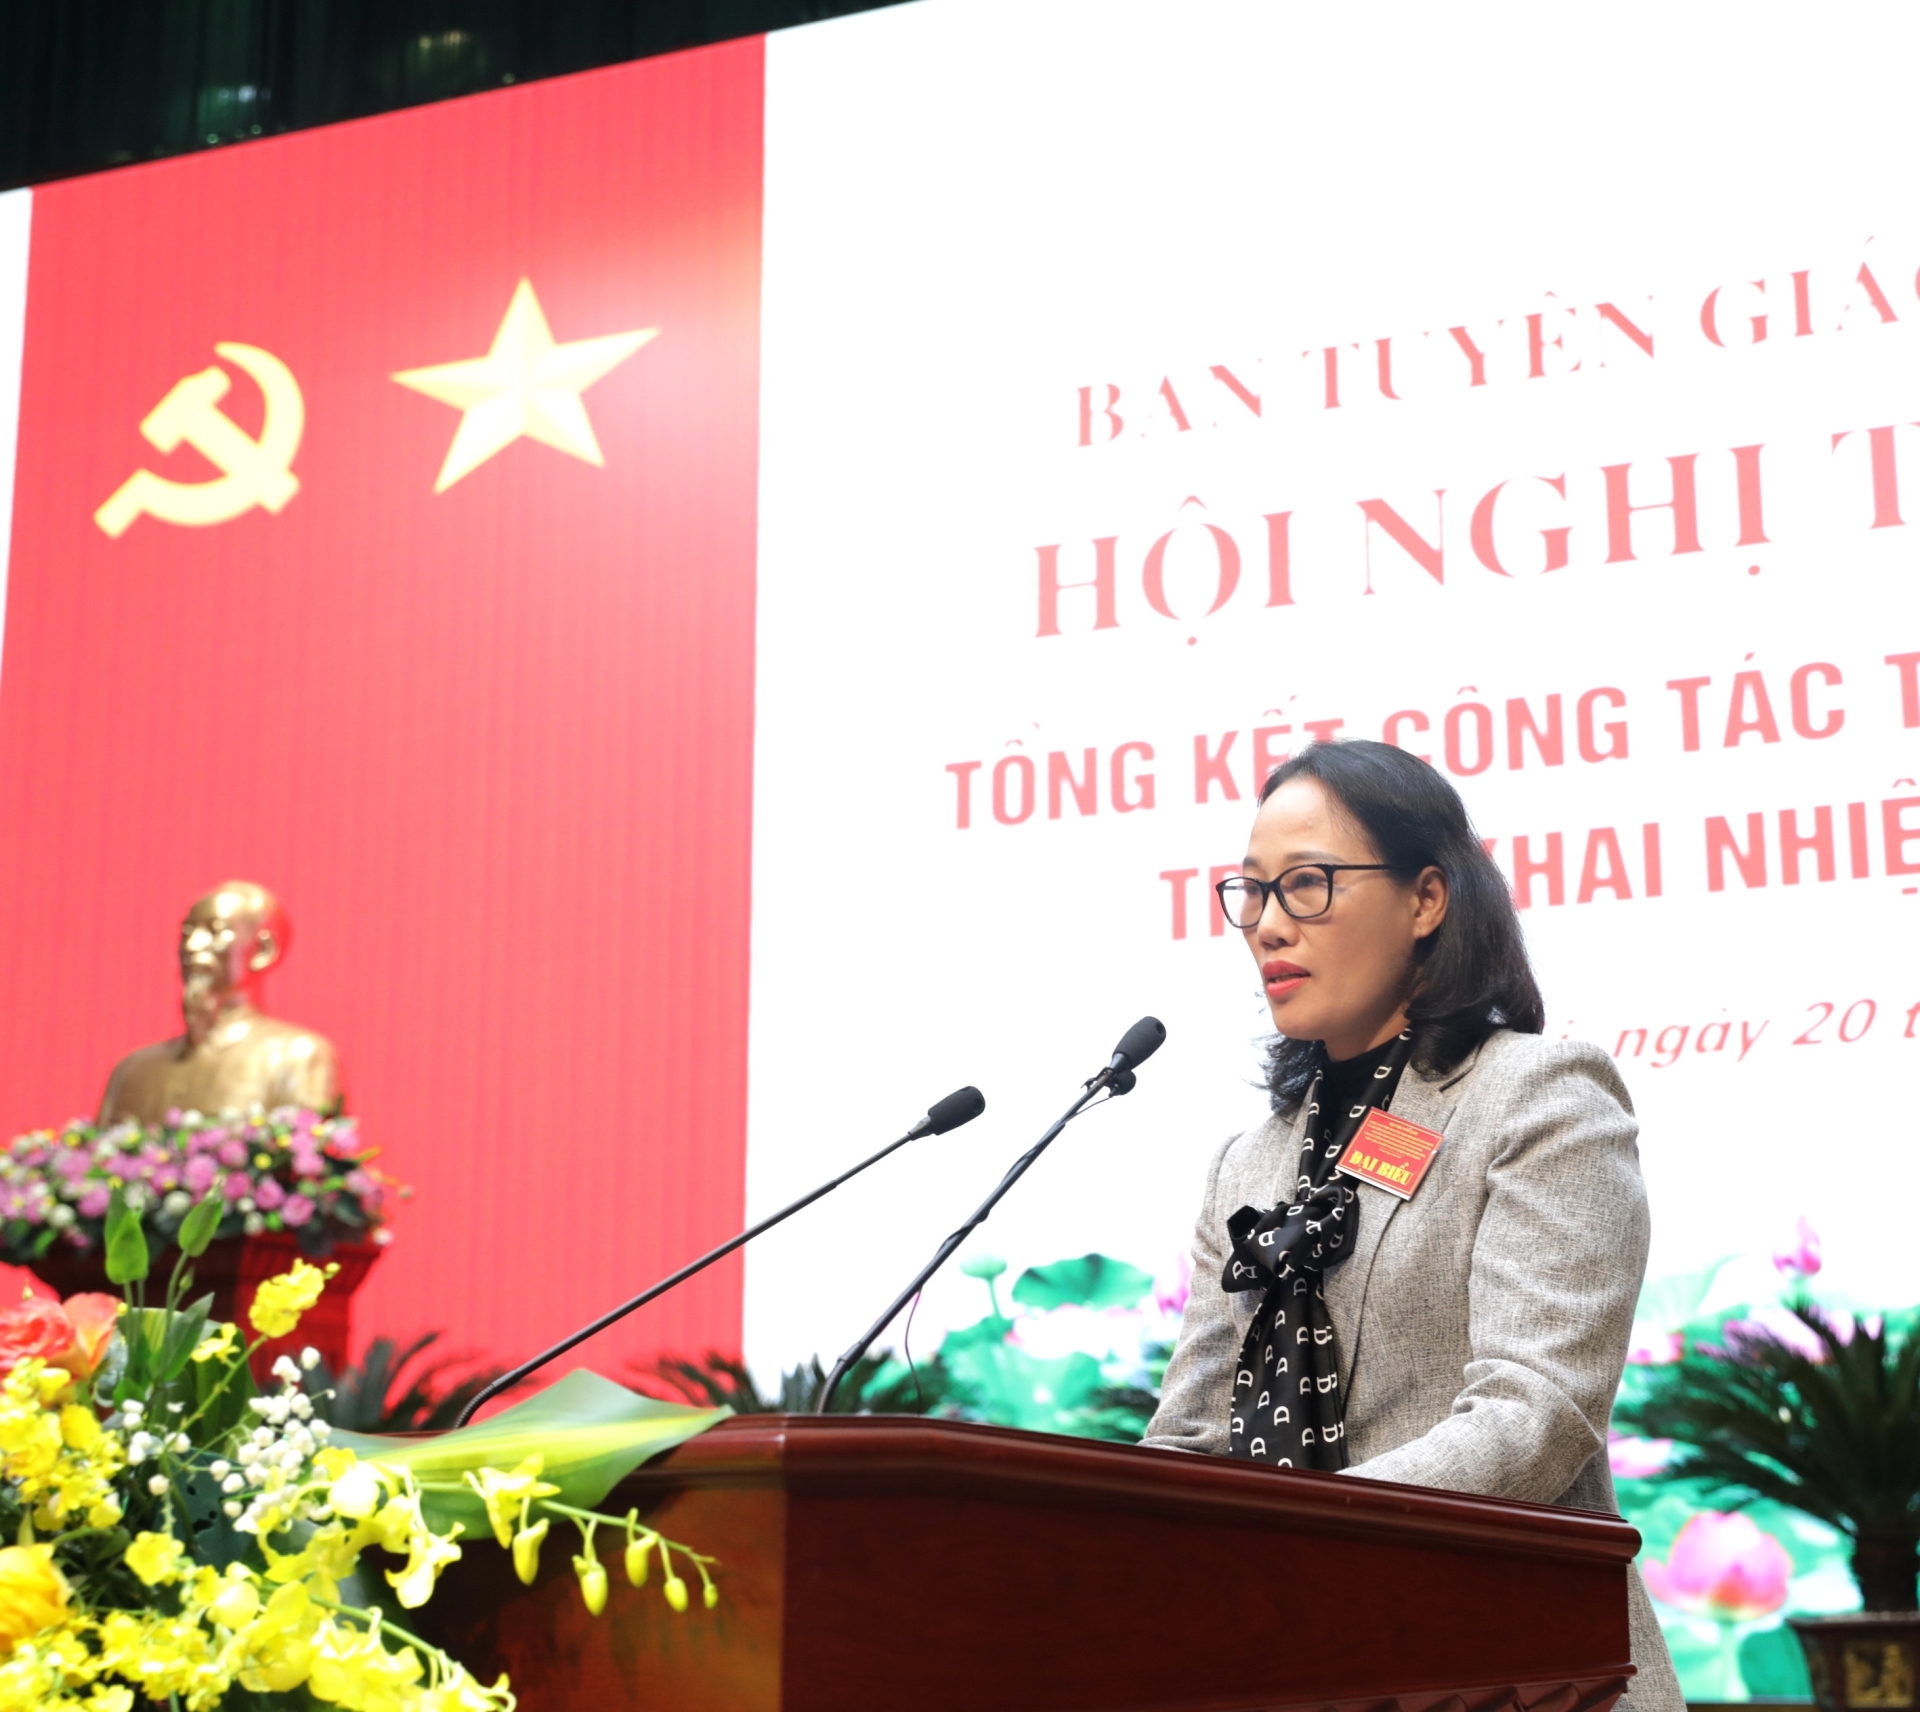 Đồng chí Hà Thị Trang, Trưởng Ban Tuyên giáo Đảng ủy Khối các cơ quan Trung ương, phát biểu tham luận với chủ đề: “Xây dựng Đảng về chính trị, tư tưởng, đạo đức trong đảng bộ khối các cơ quan Trung ương”.